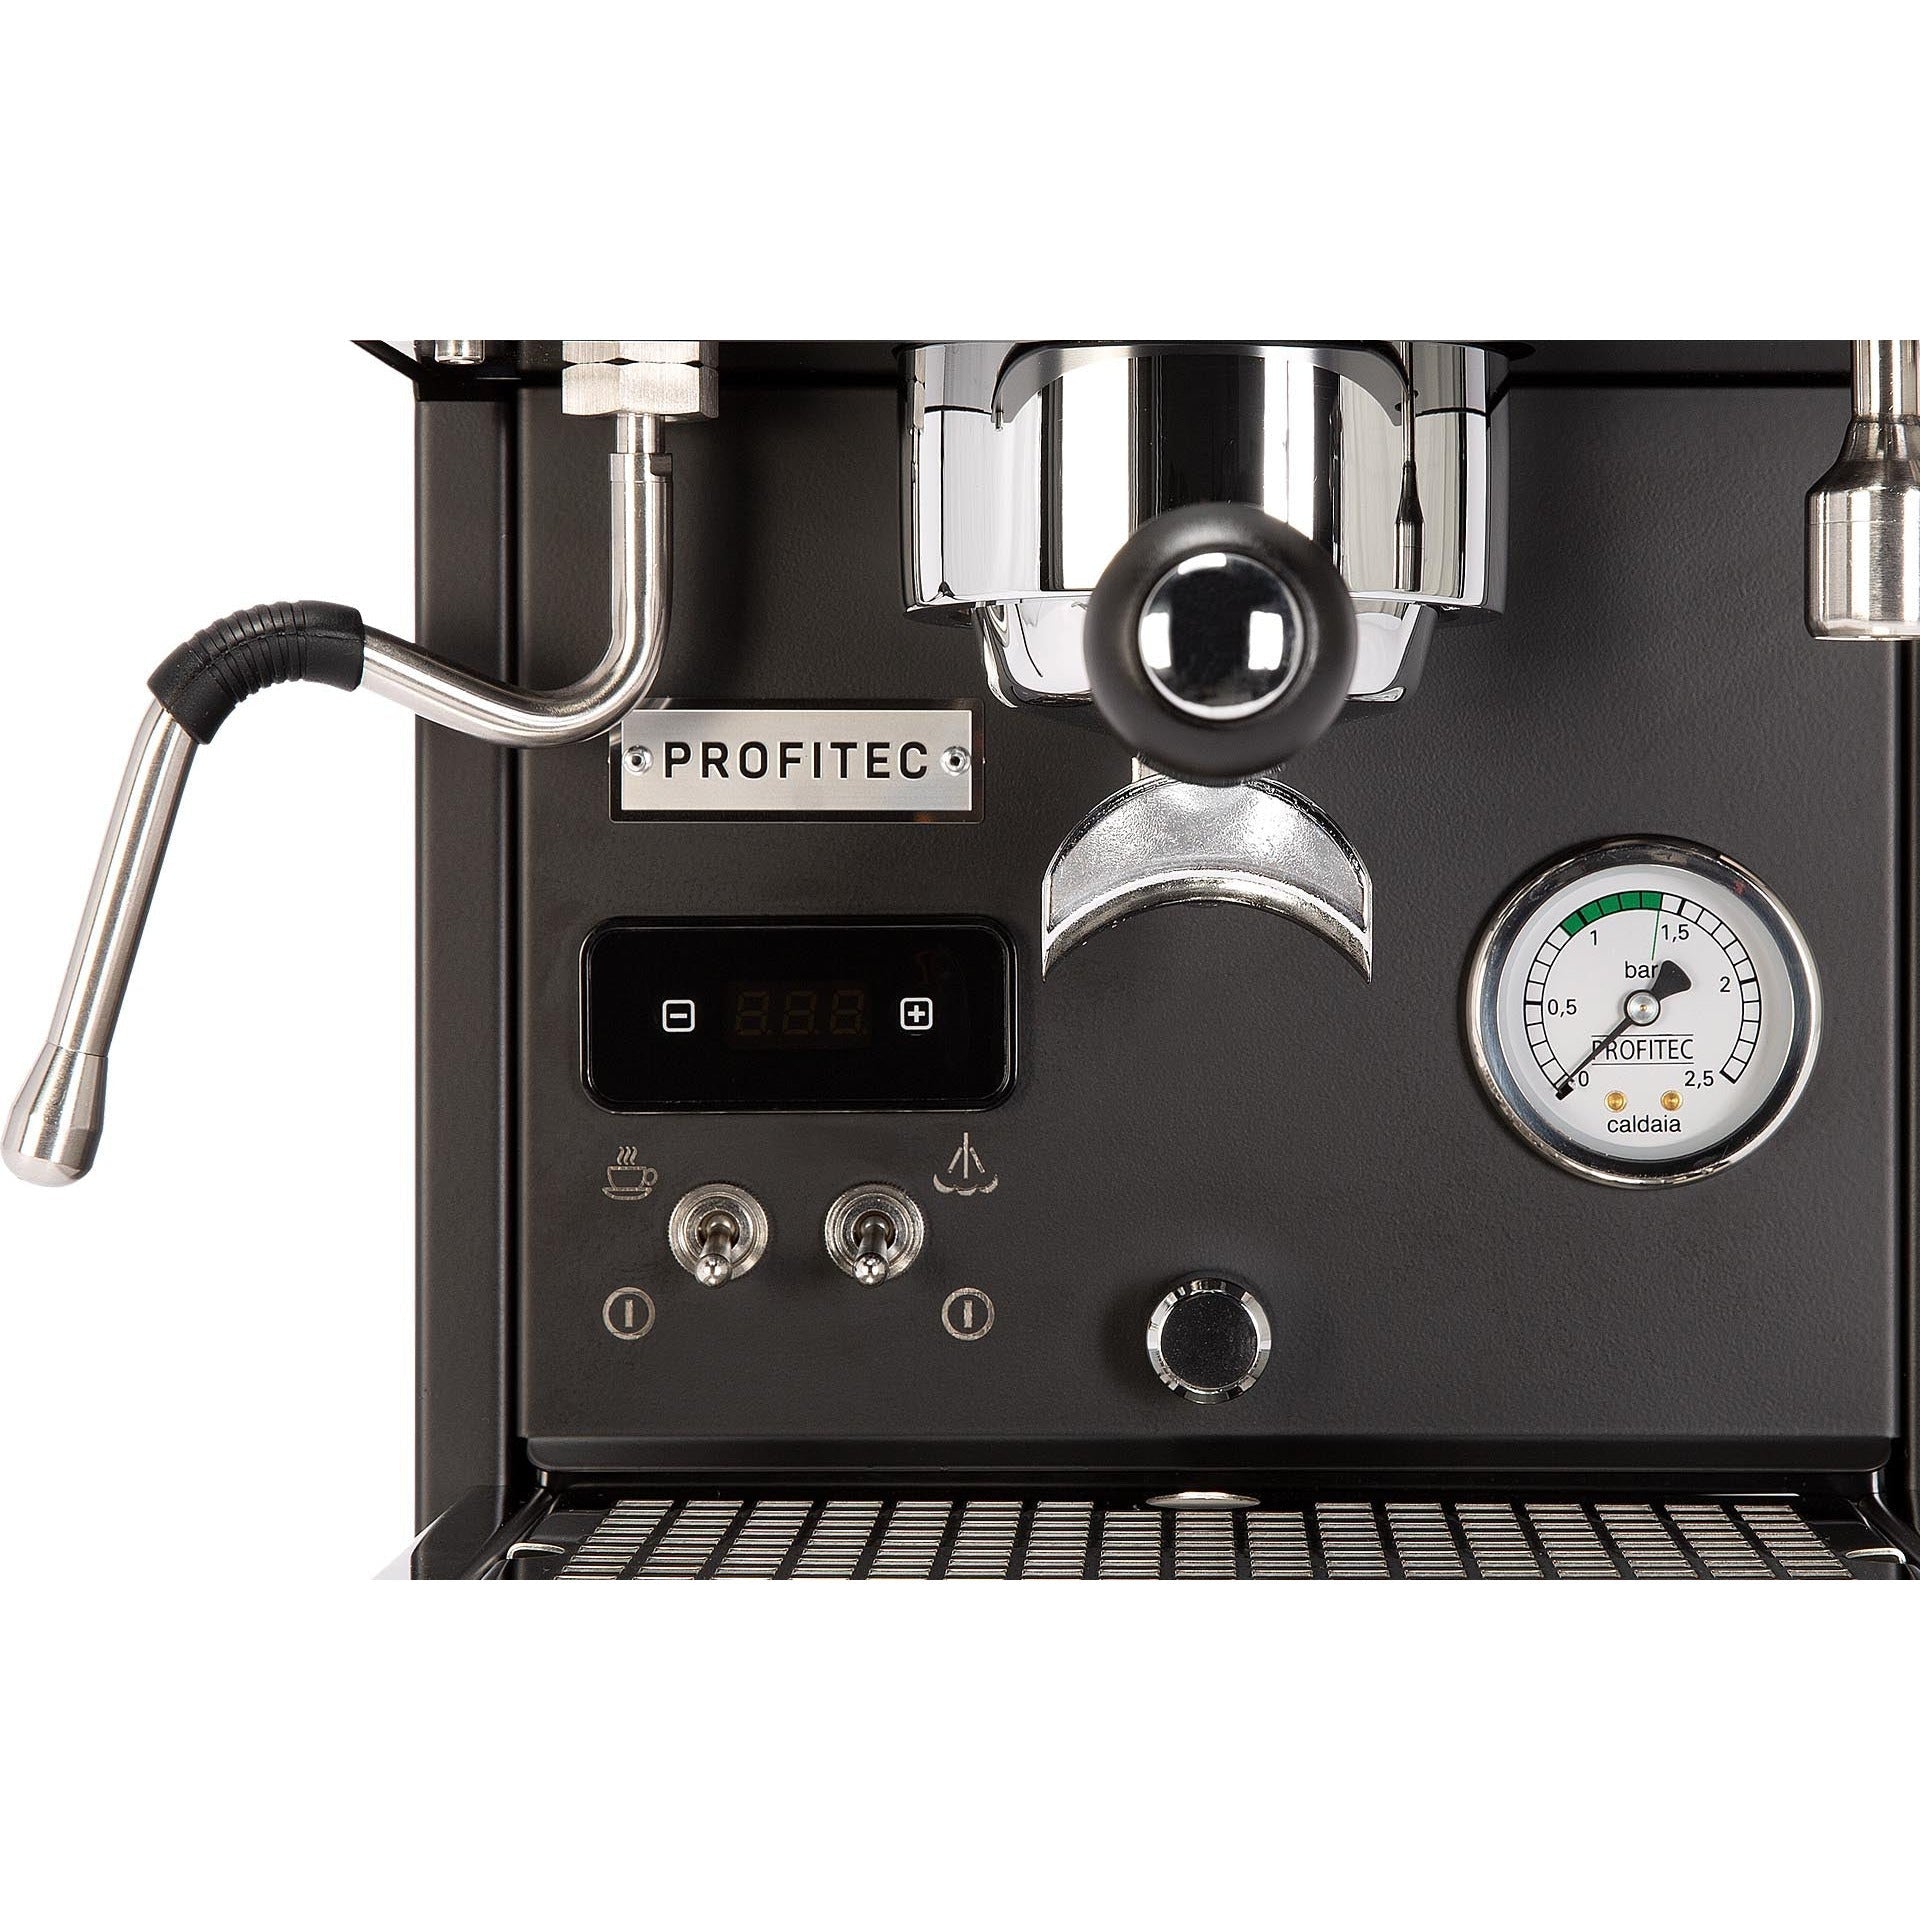 Profitec Pro 300 PID - Dualboiler Espressomaschine mit PID-Steuerung Espressomaschinen Profitec    - Rheinland.Coffee